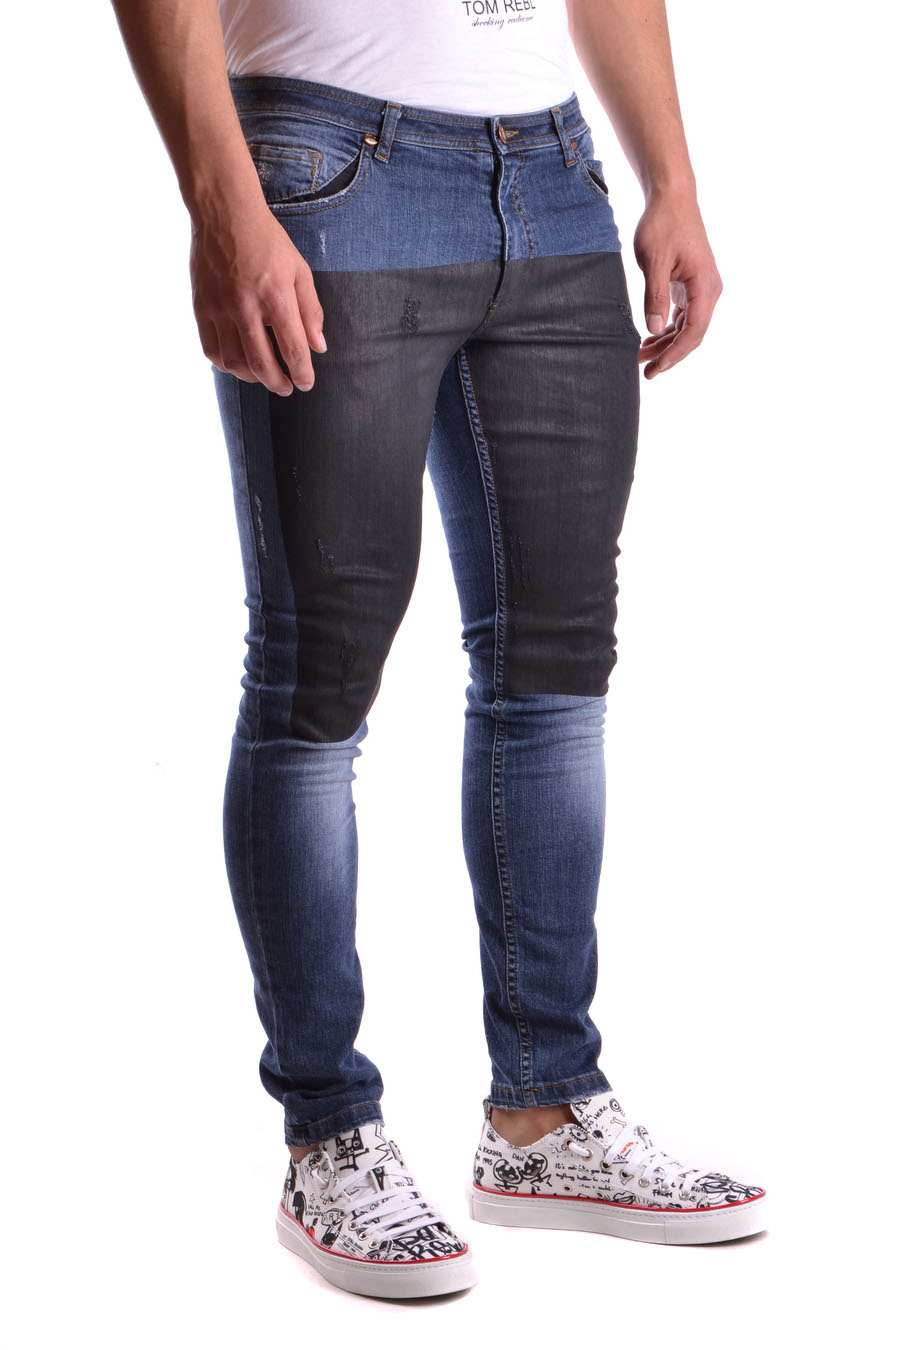 TOM REBL Jeans | ViganoBoutique.com